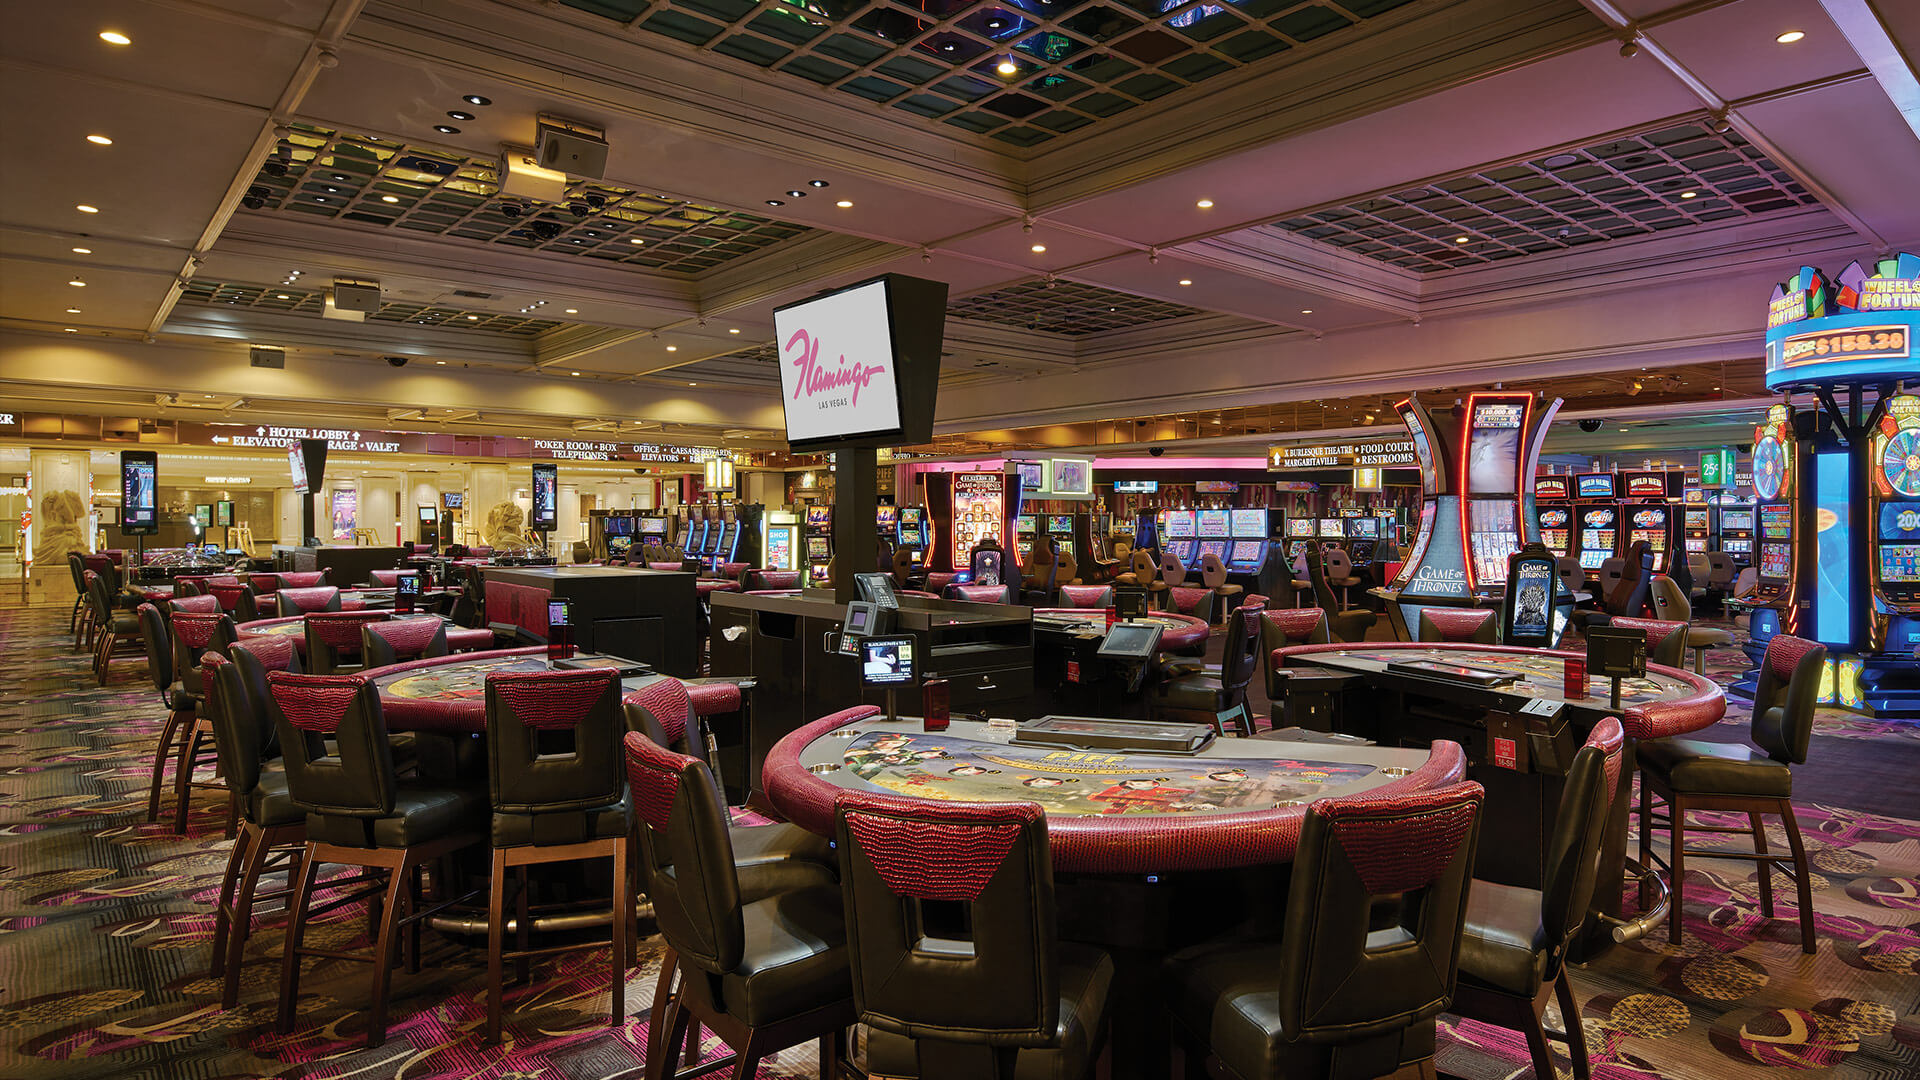 Flamingo Las Vegas - Flamingo Hotel Las Vegas